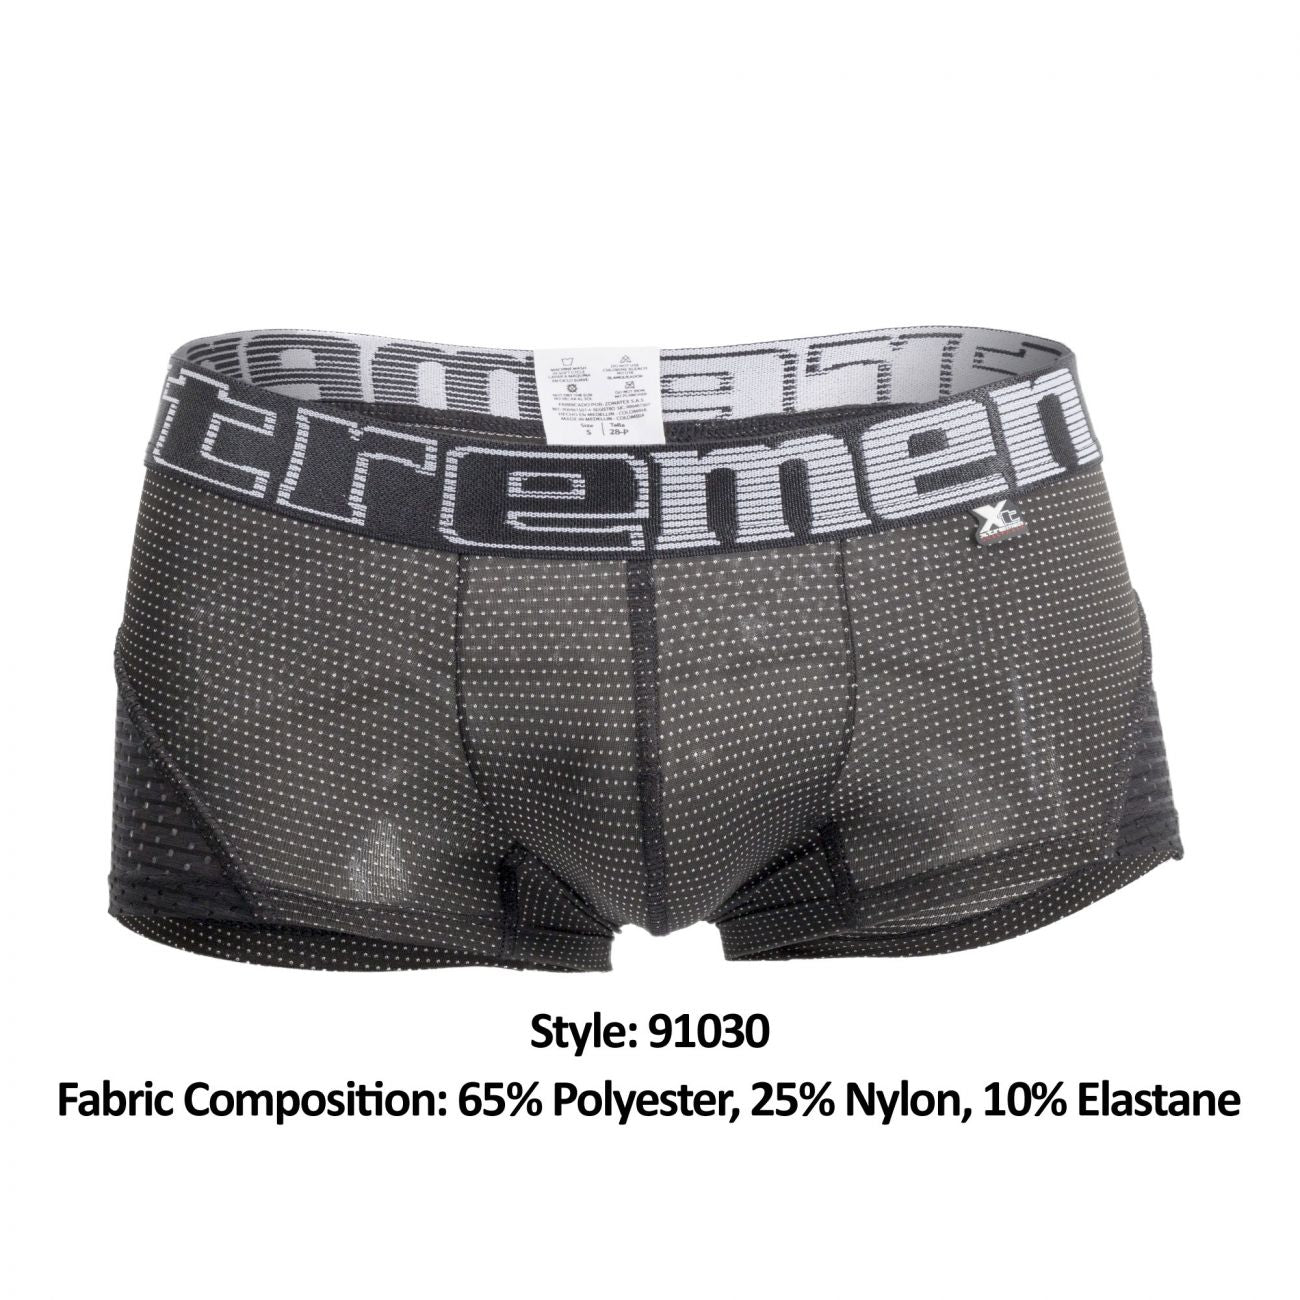 Xtremen 91030 Sports Mesh Boxer Briefs